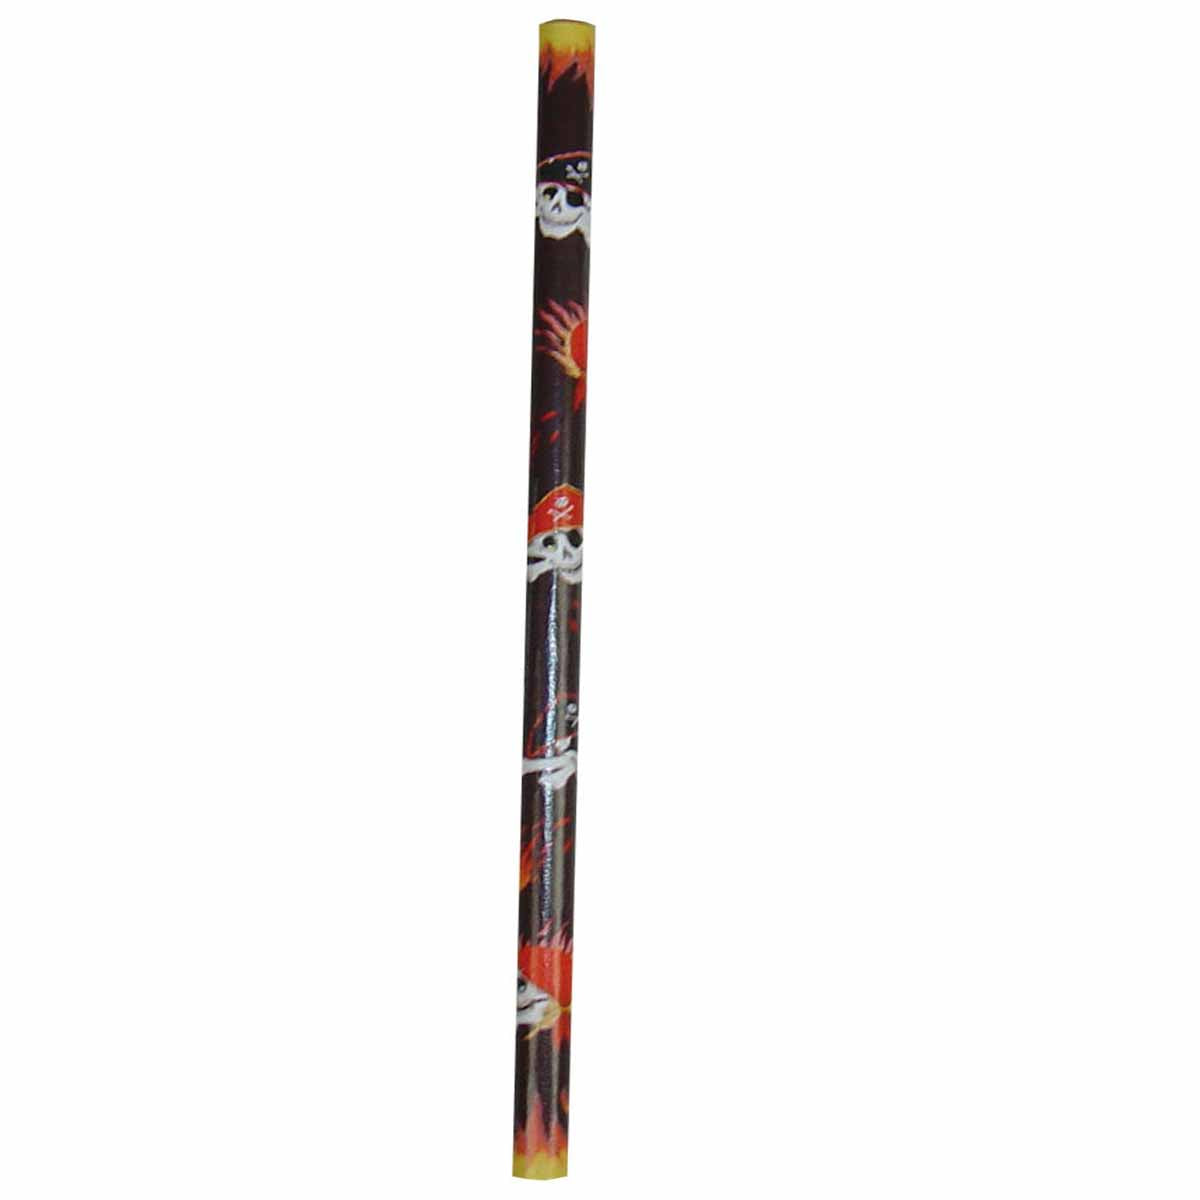 Piraten-Bleistift 17,5 cm